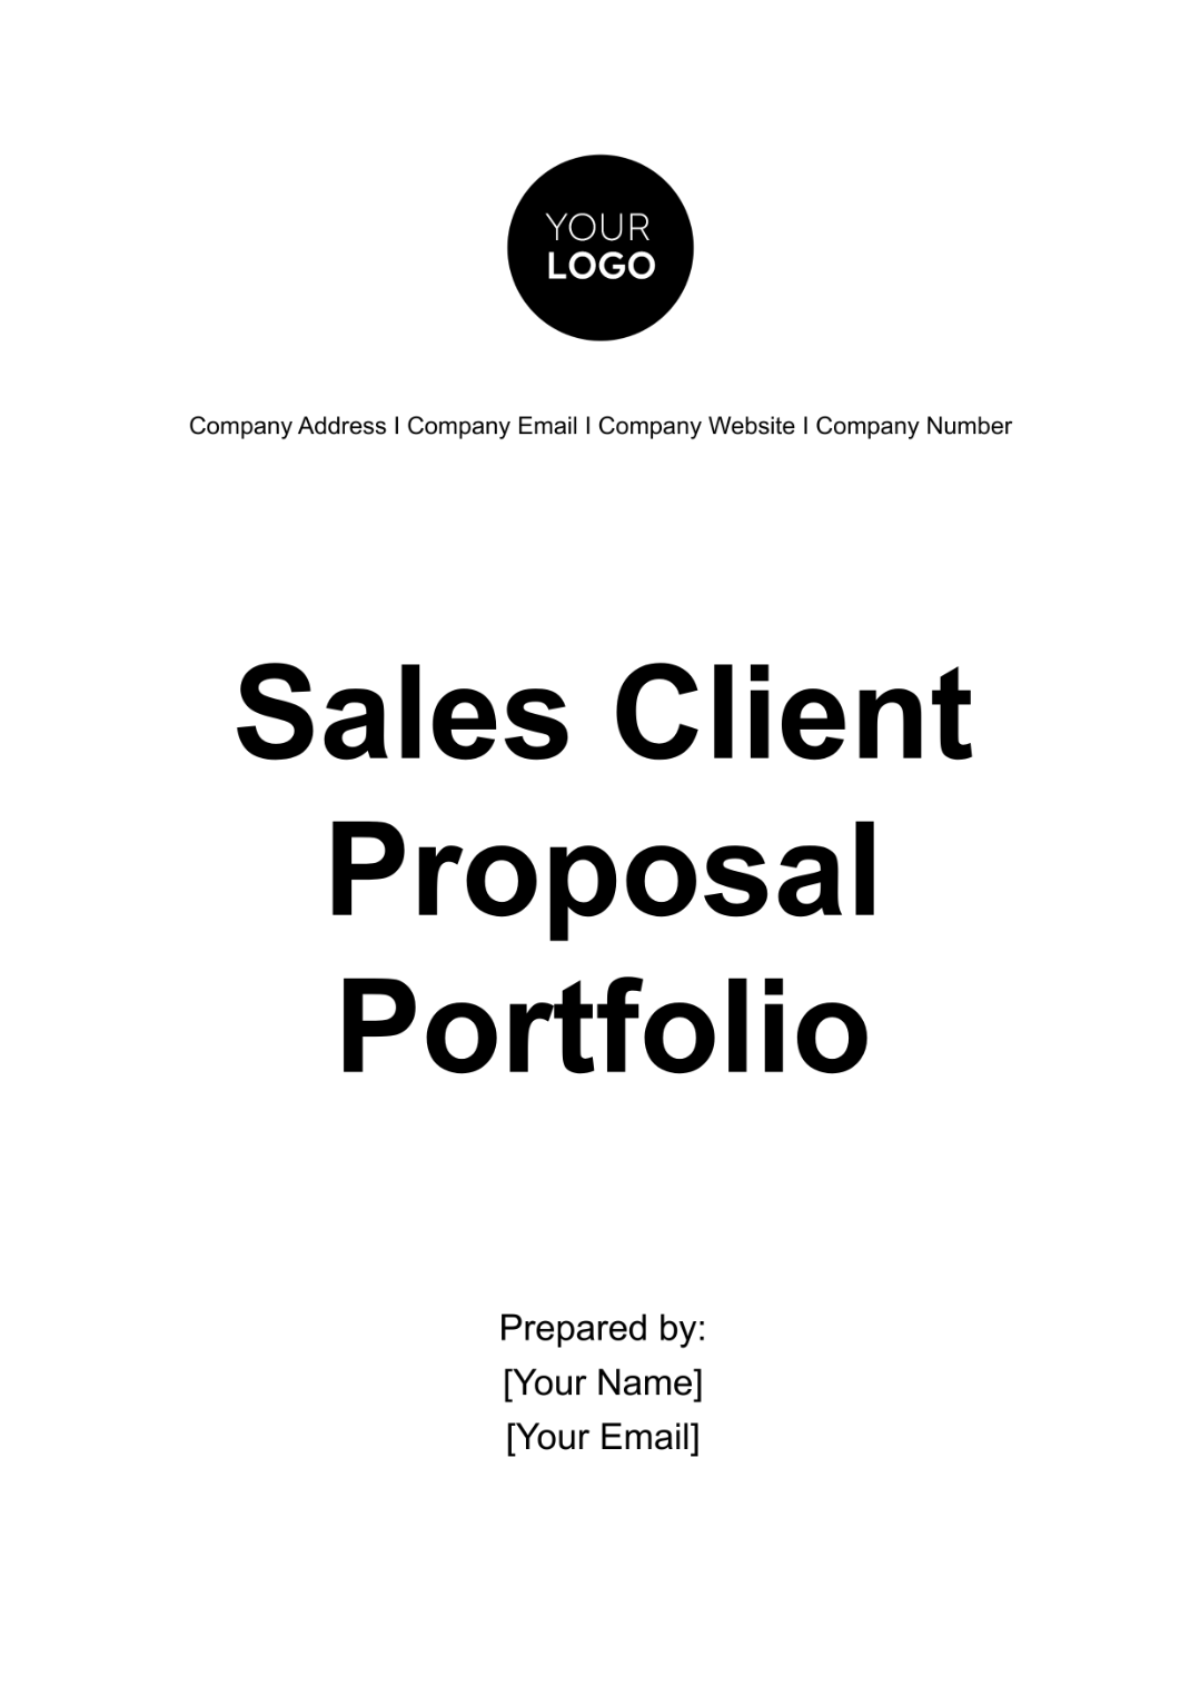 Sales Client Proposal Portfolio Template